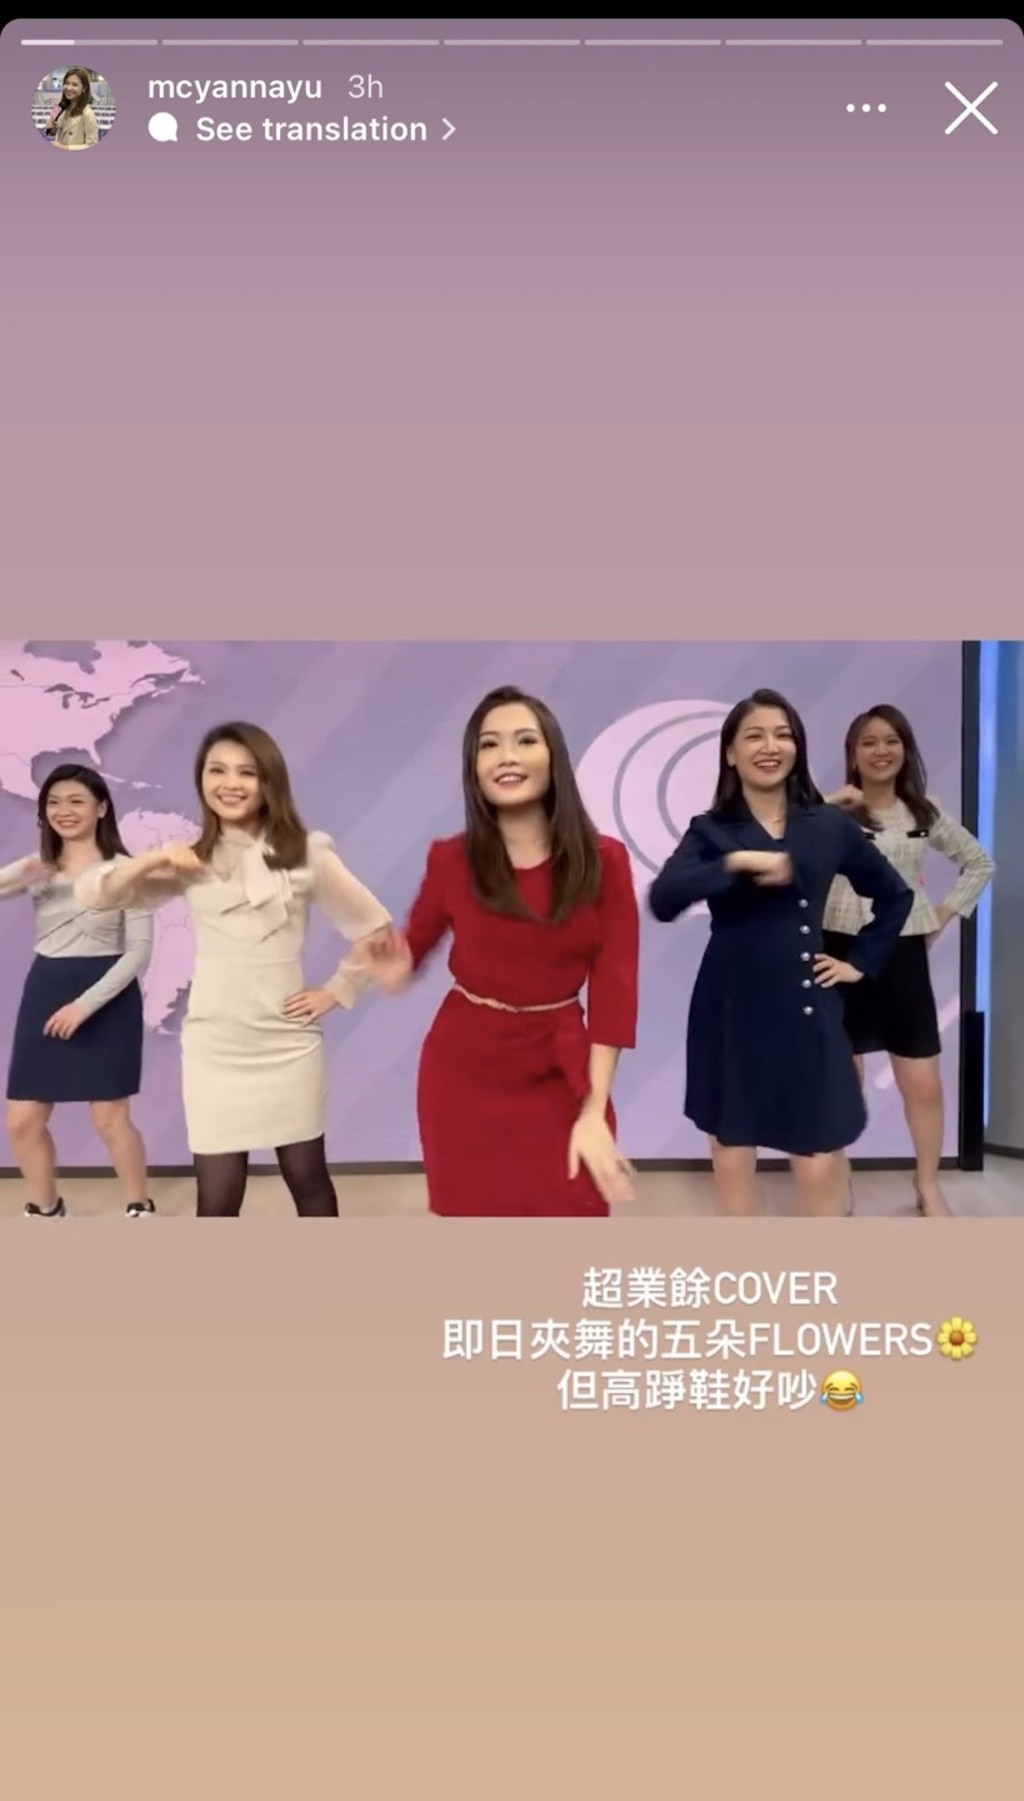 余茵娜（左二）於社交網分享影片並寫道：「超業餘Cover，即日夾舞的五朵Flowers，但高踭鞋好吵。」